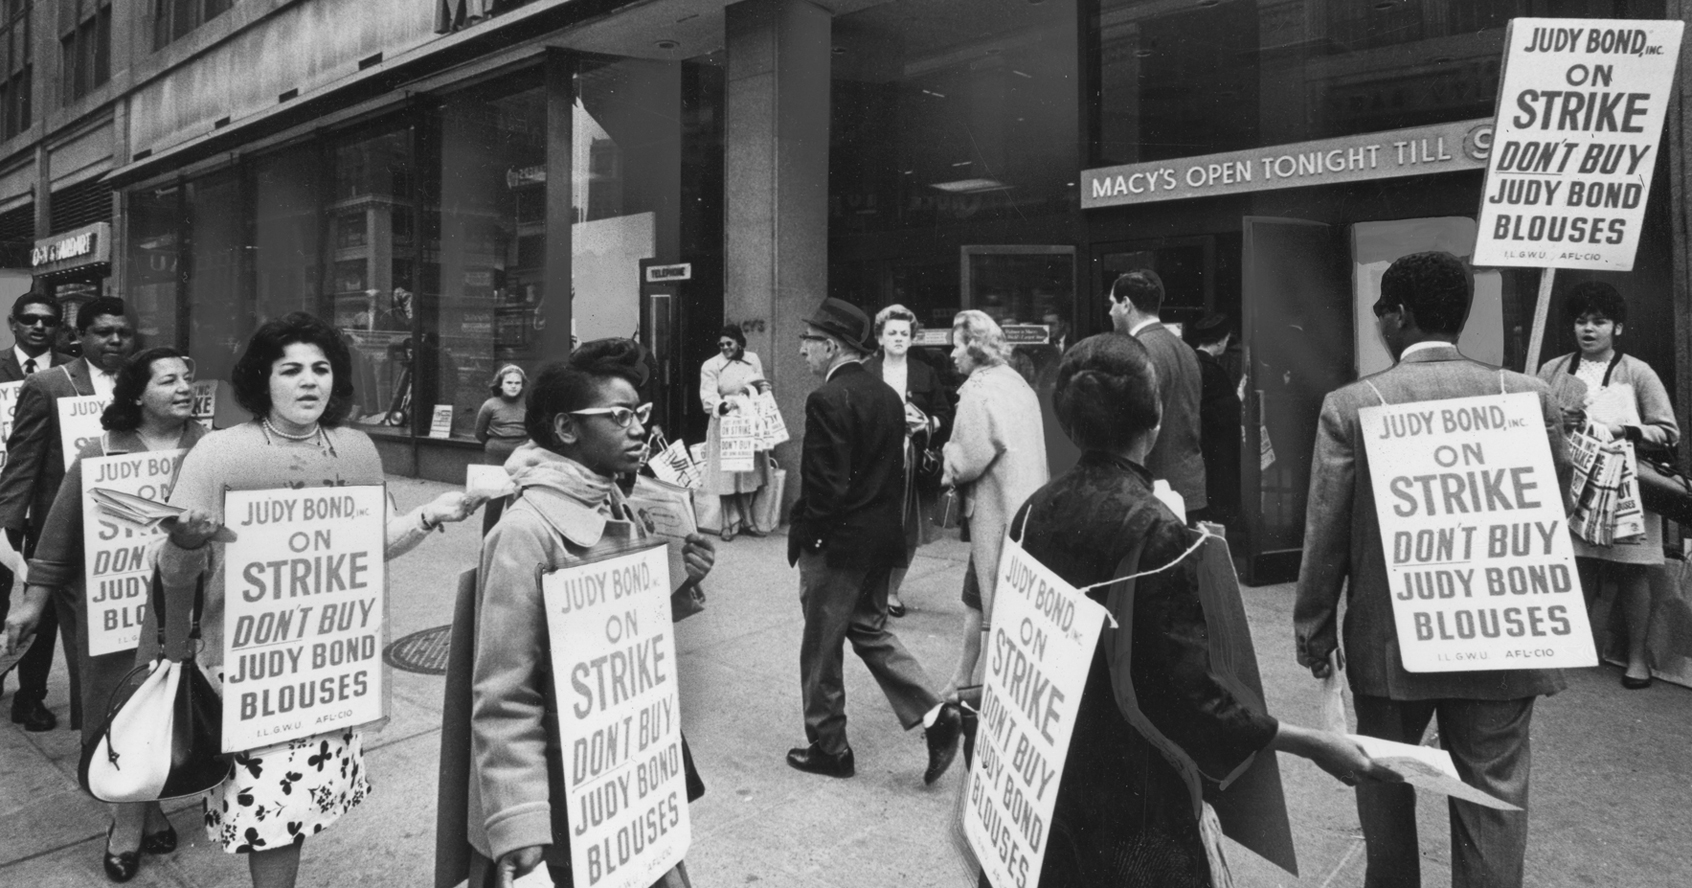 Un groupe de travailleurs en grève défile devant Macy's tout en portant des pancartes encourageant les gens à ne pas acheter de blouses Judy Bond